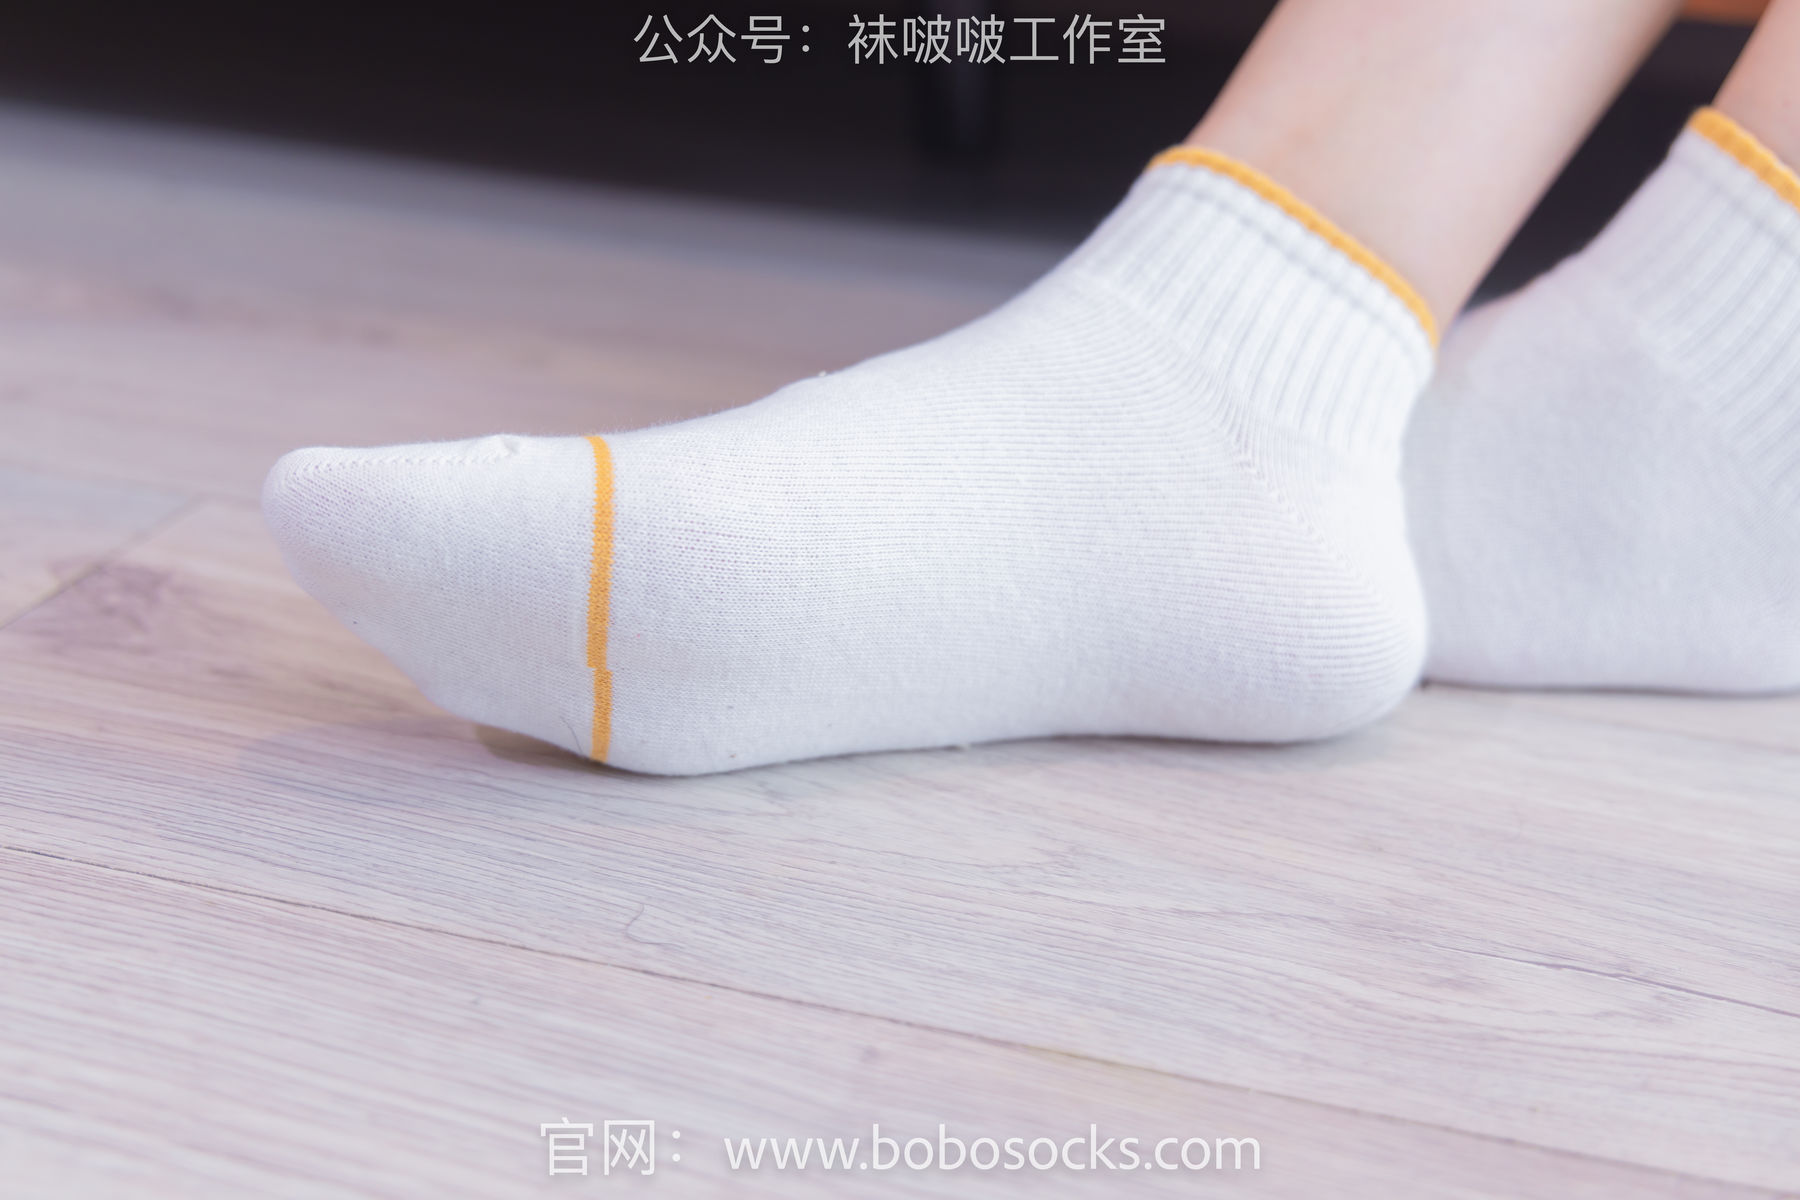 BoBoSocks袜啵啵 No.120 小甜豆-高跟长靴、白棉袜、裸足/(170P)